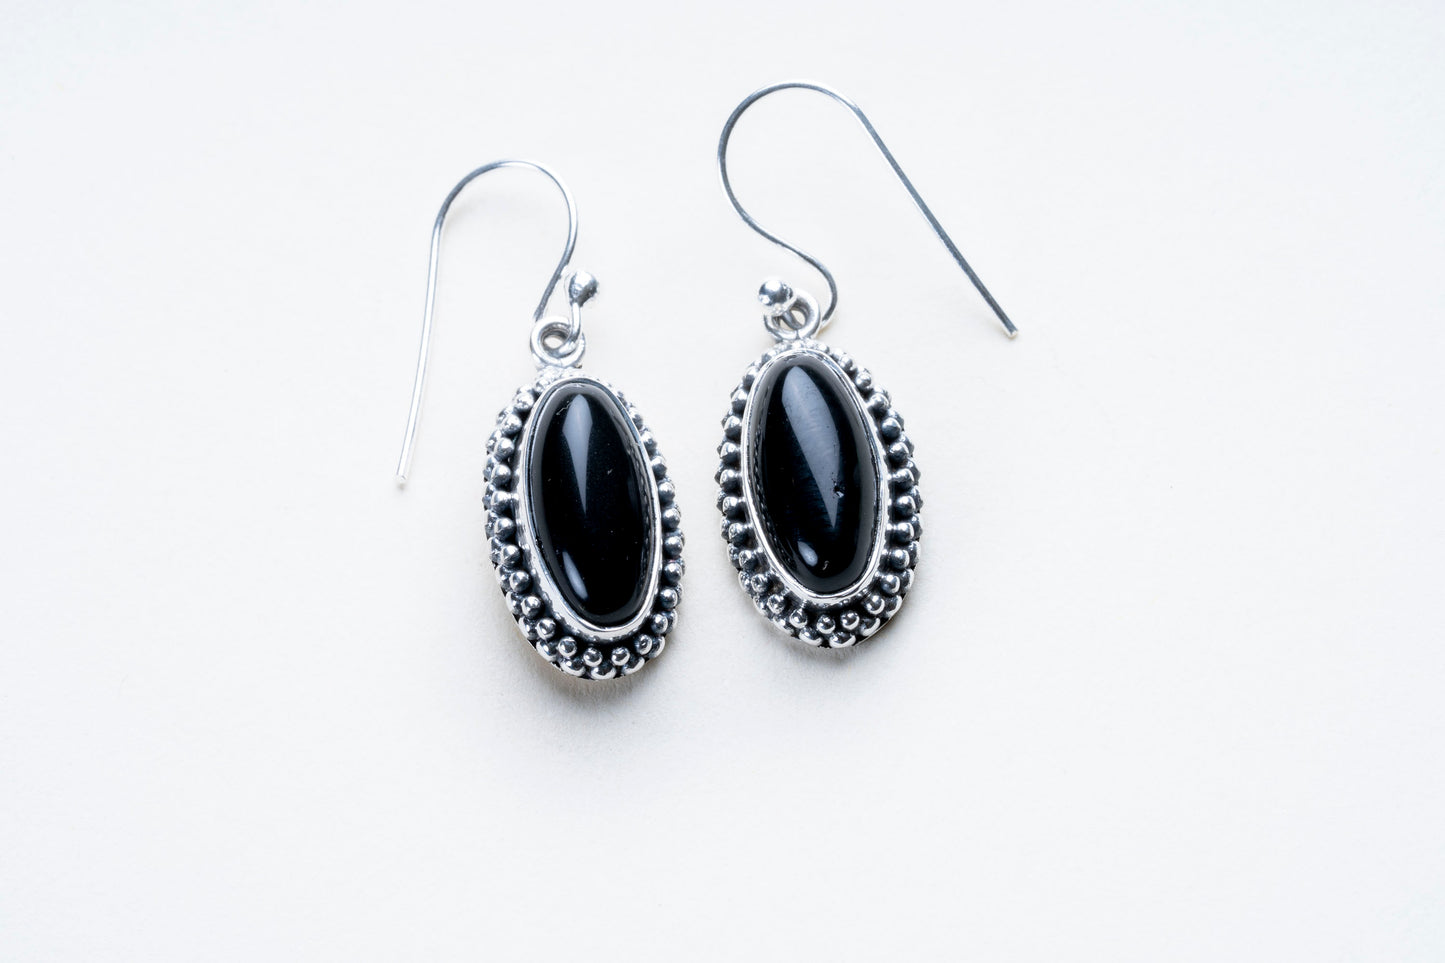 Black Obsidian Oval Cut Sterling Silver Earrings.